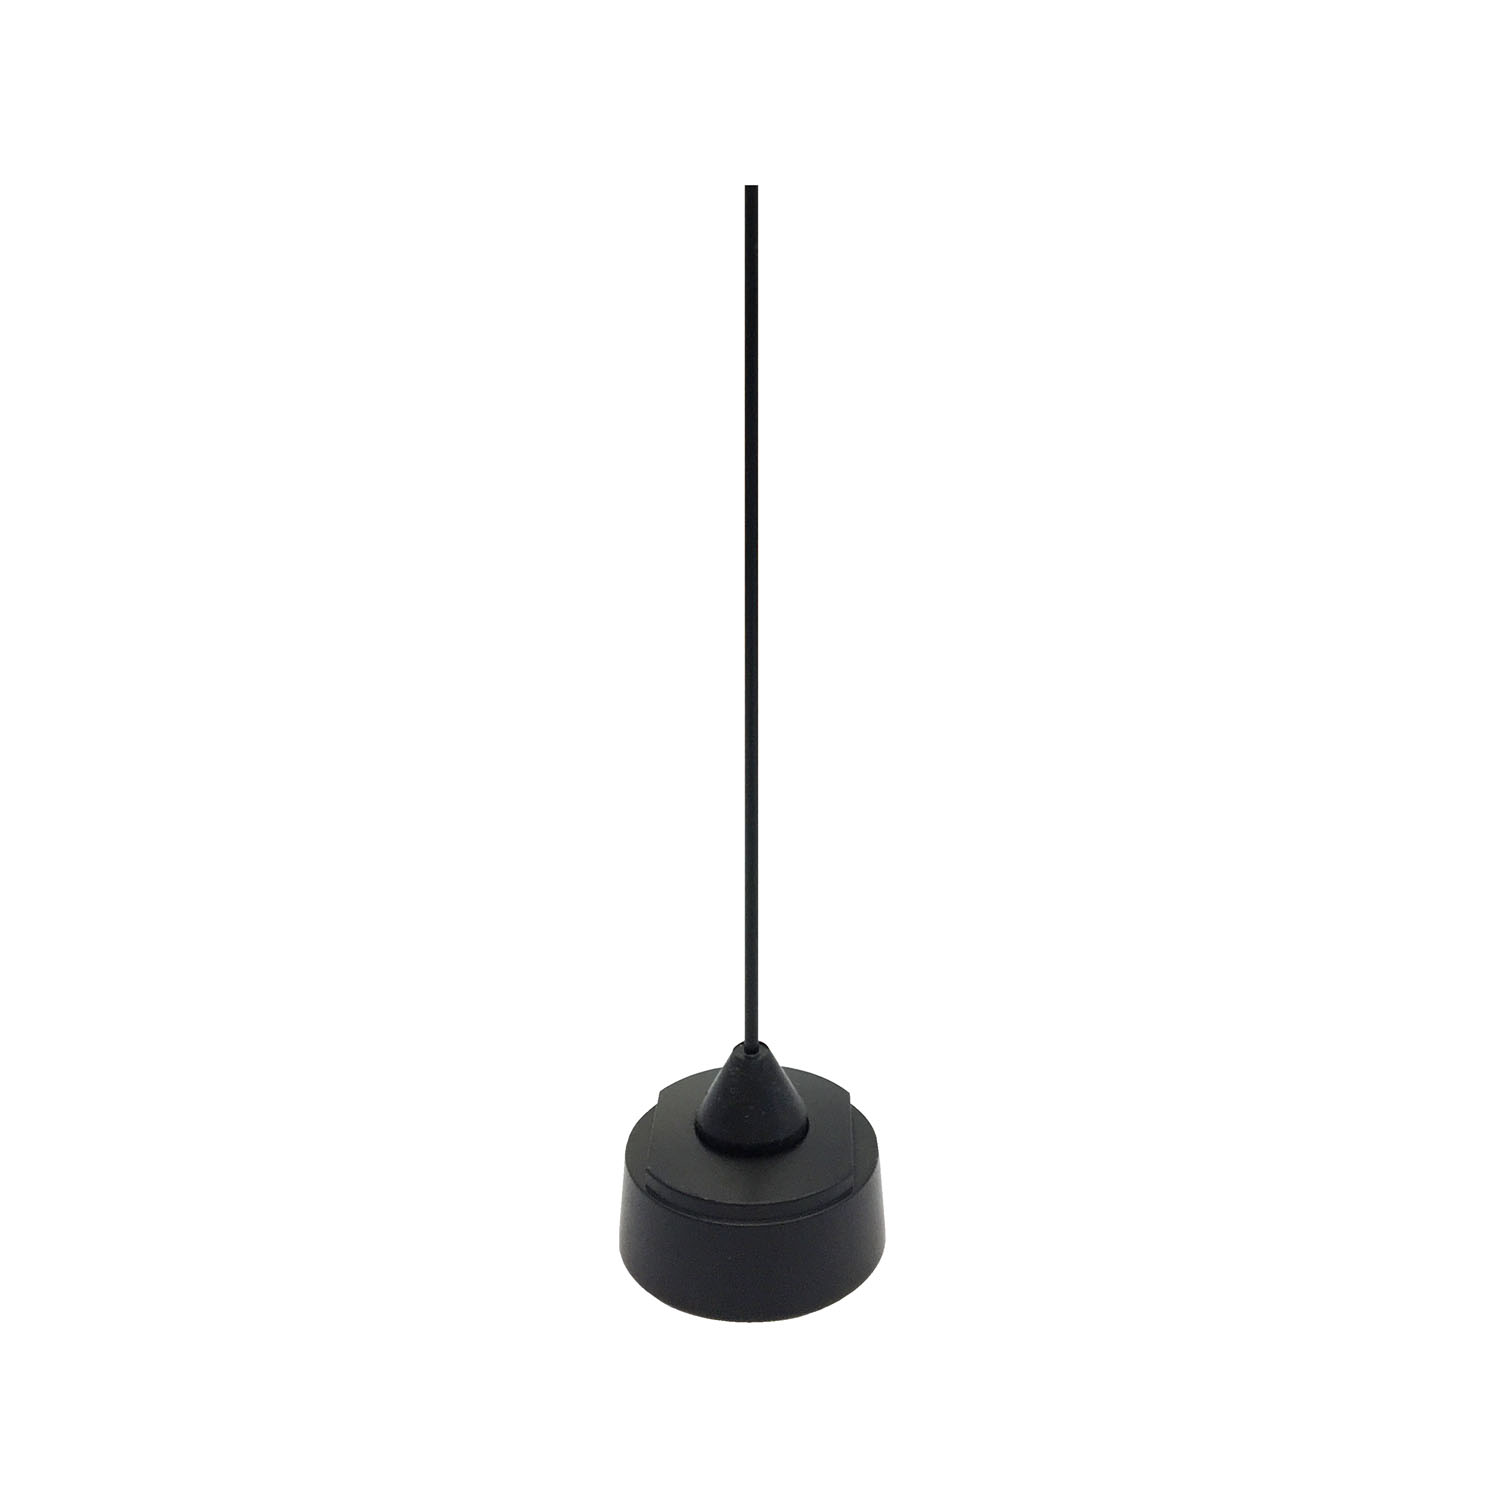 Larsen - 136-960 Mhz  21-1/4" Tall Black 1/4 Wave Field Tuneable Antenna